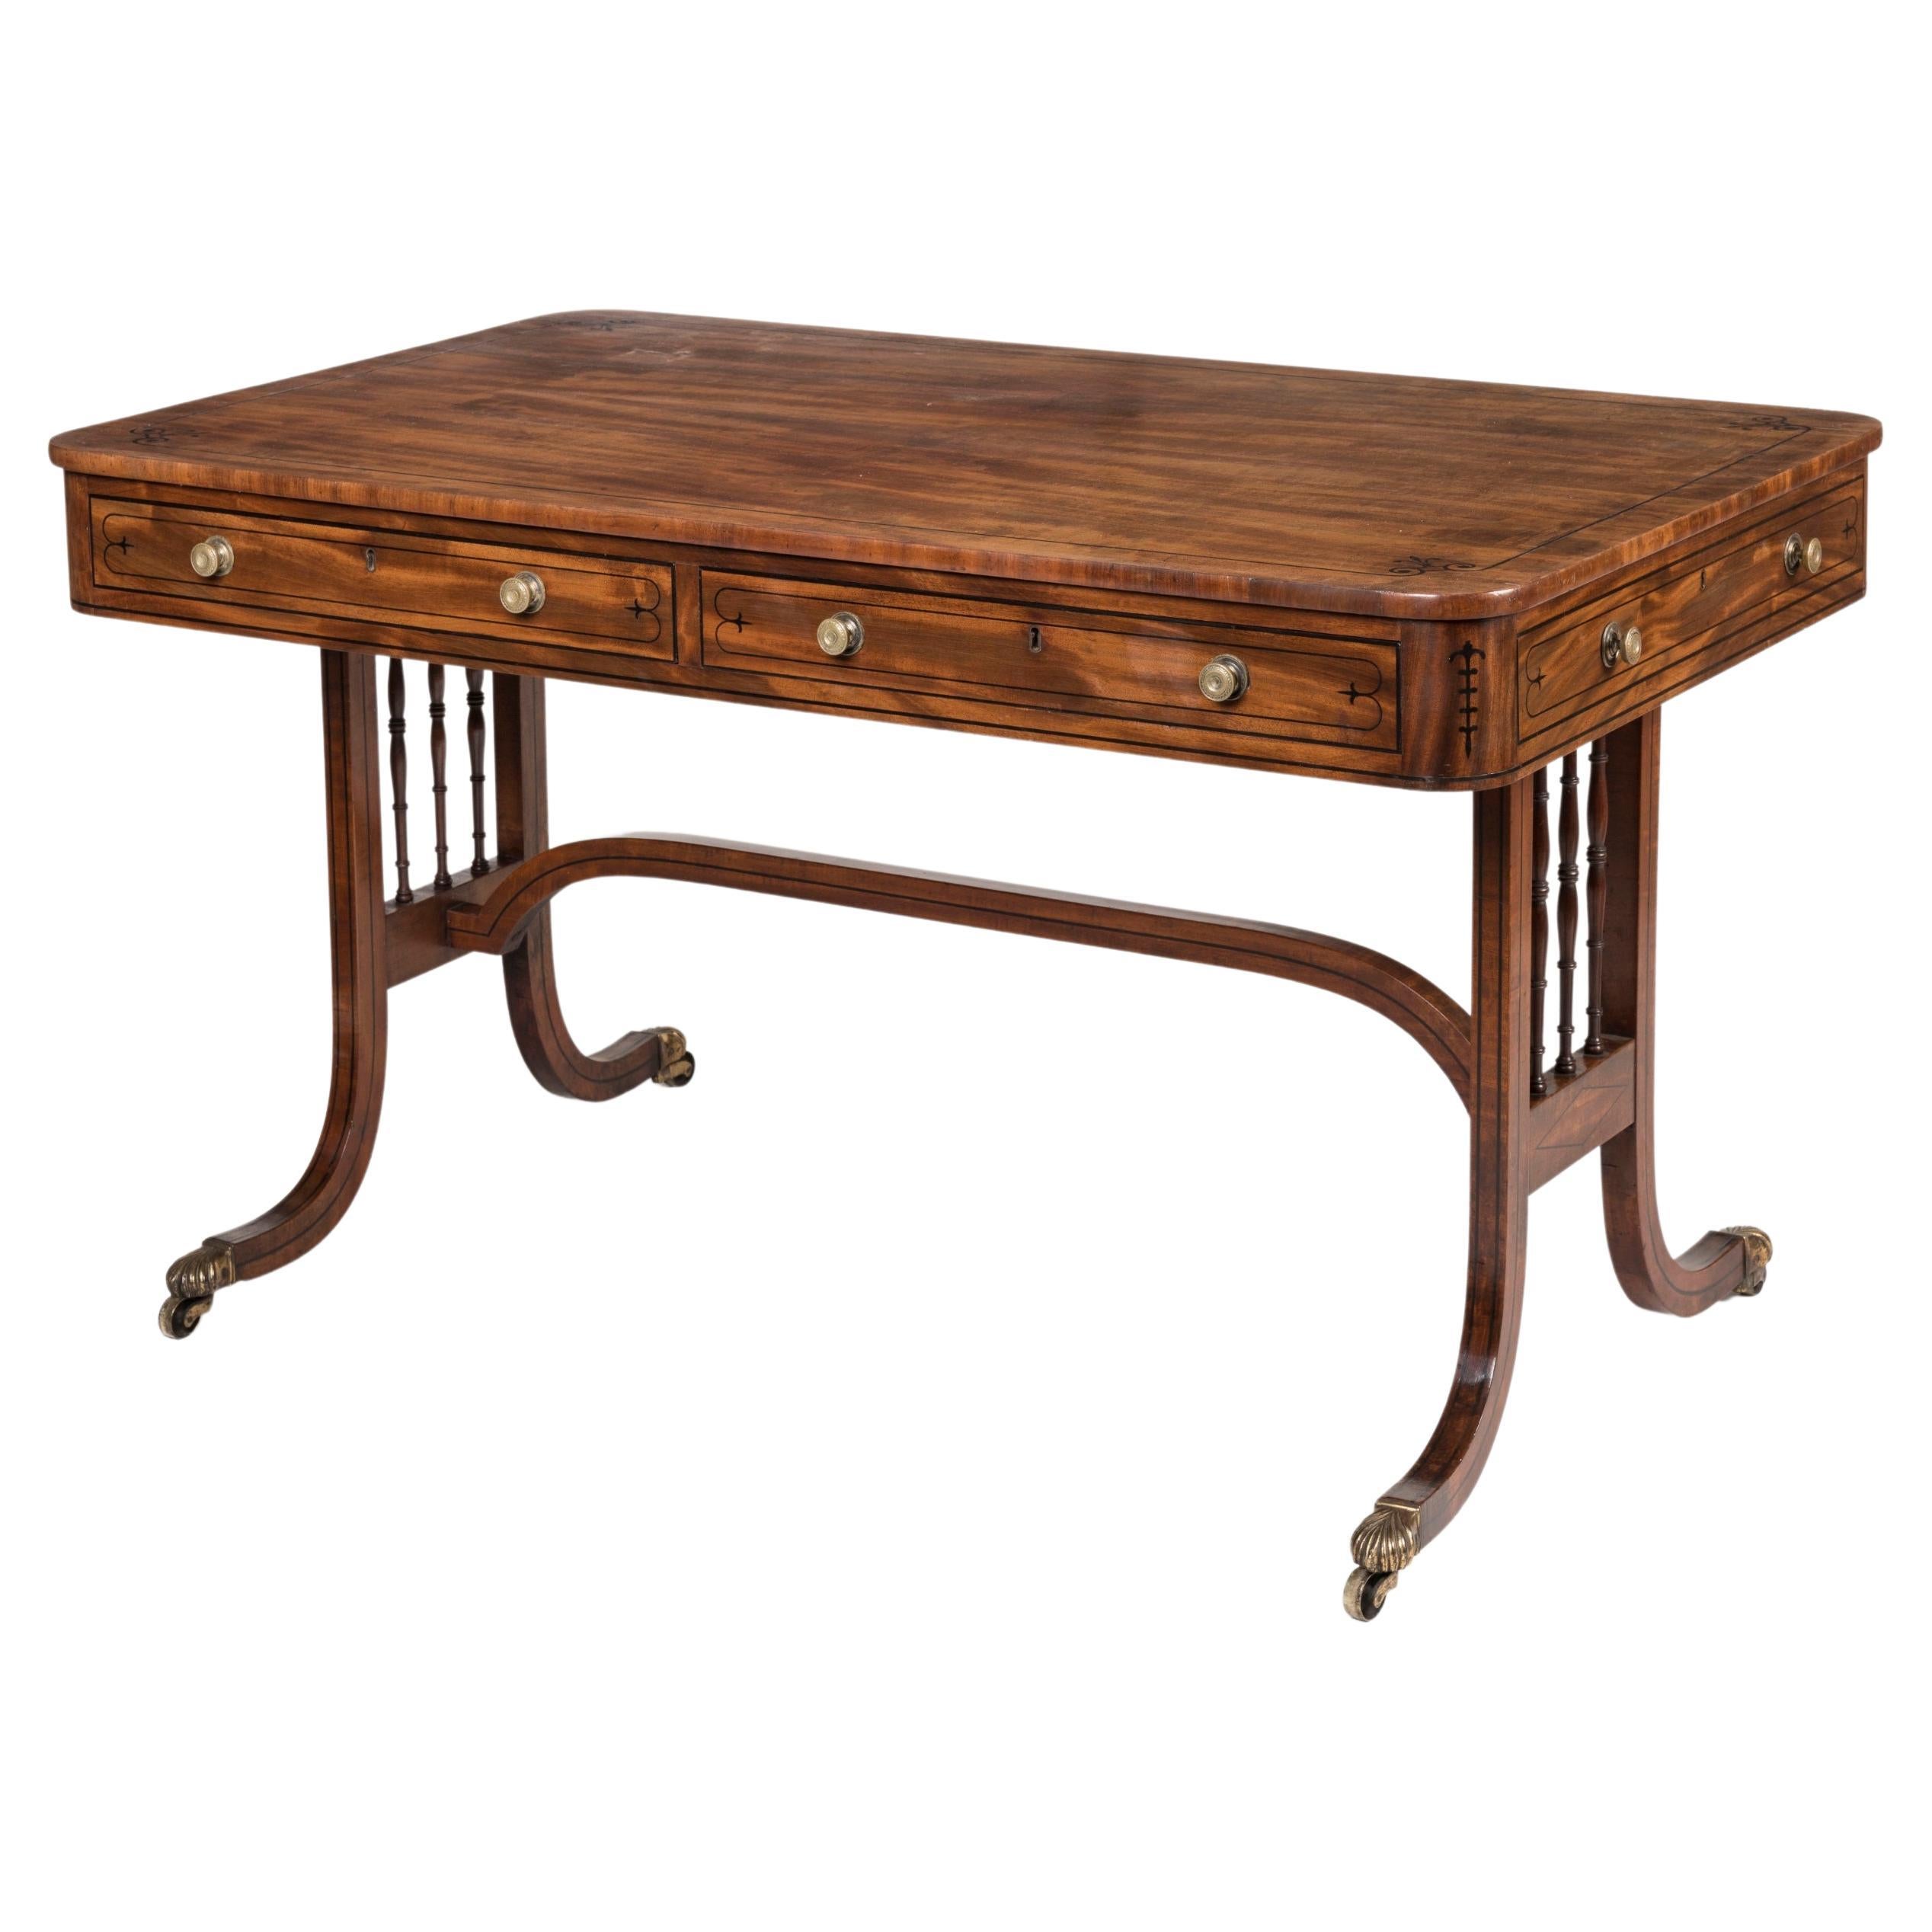 Élégante table en acajou d'époque Régence anglaise avec détails incrustés